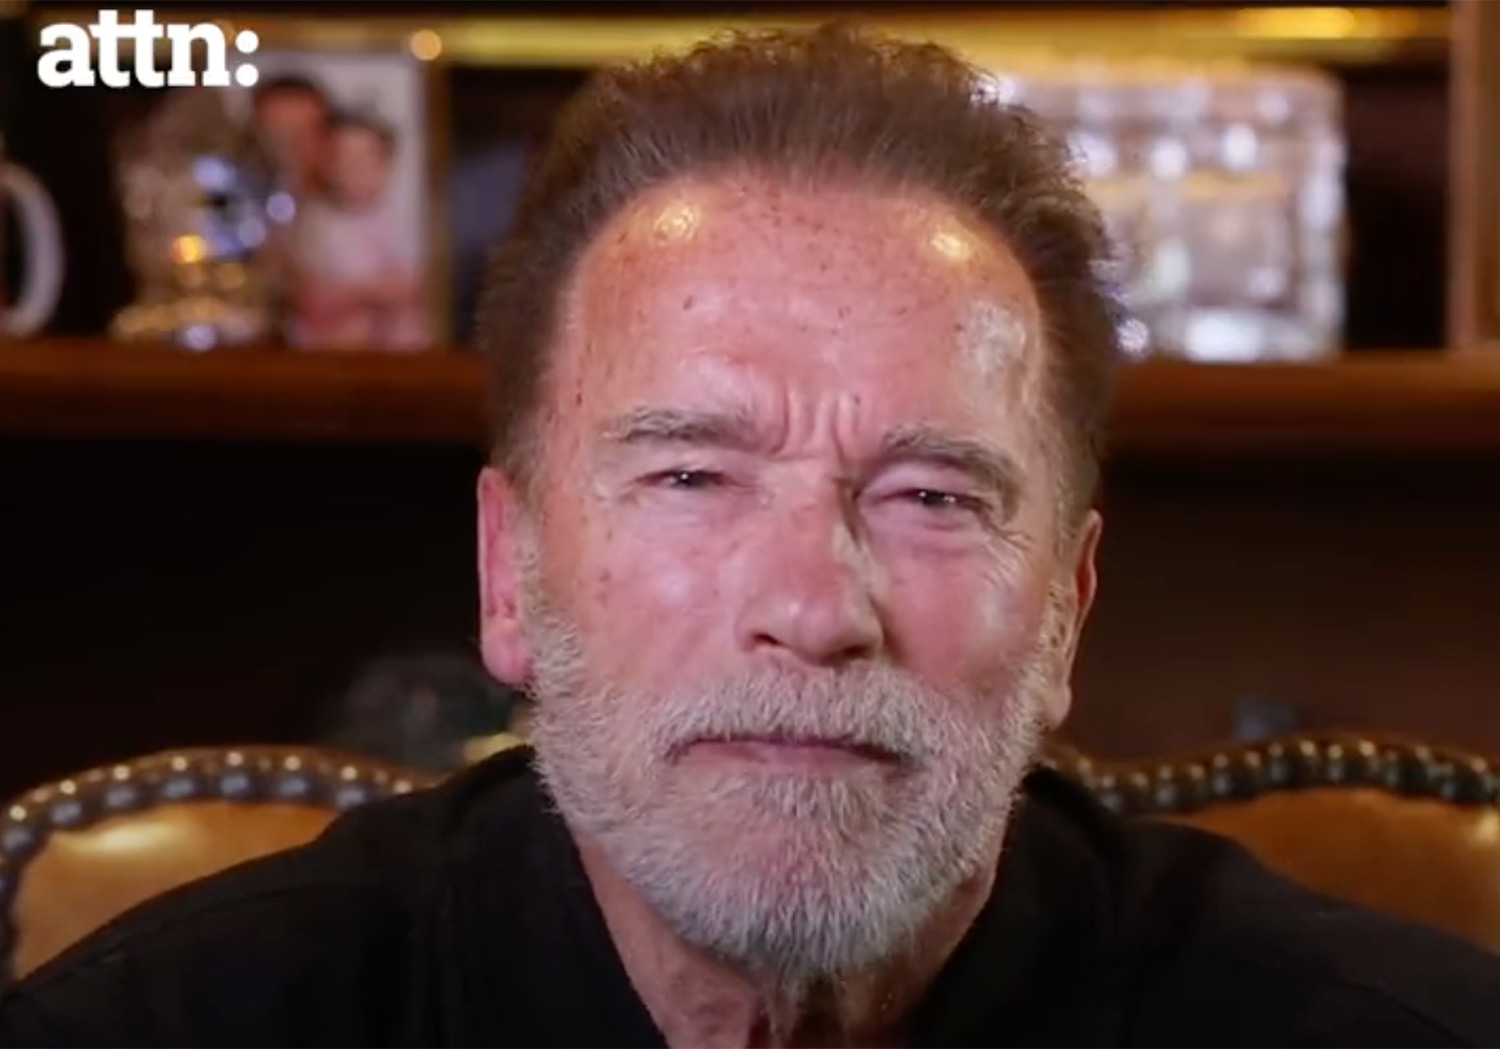 Arnold Schwarzenegger appeals to Russian people to reject Kremlin misinformation